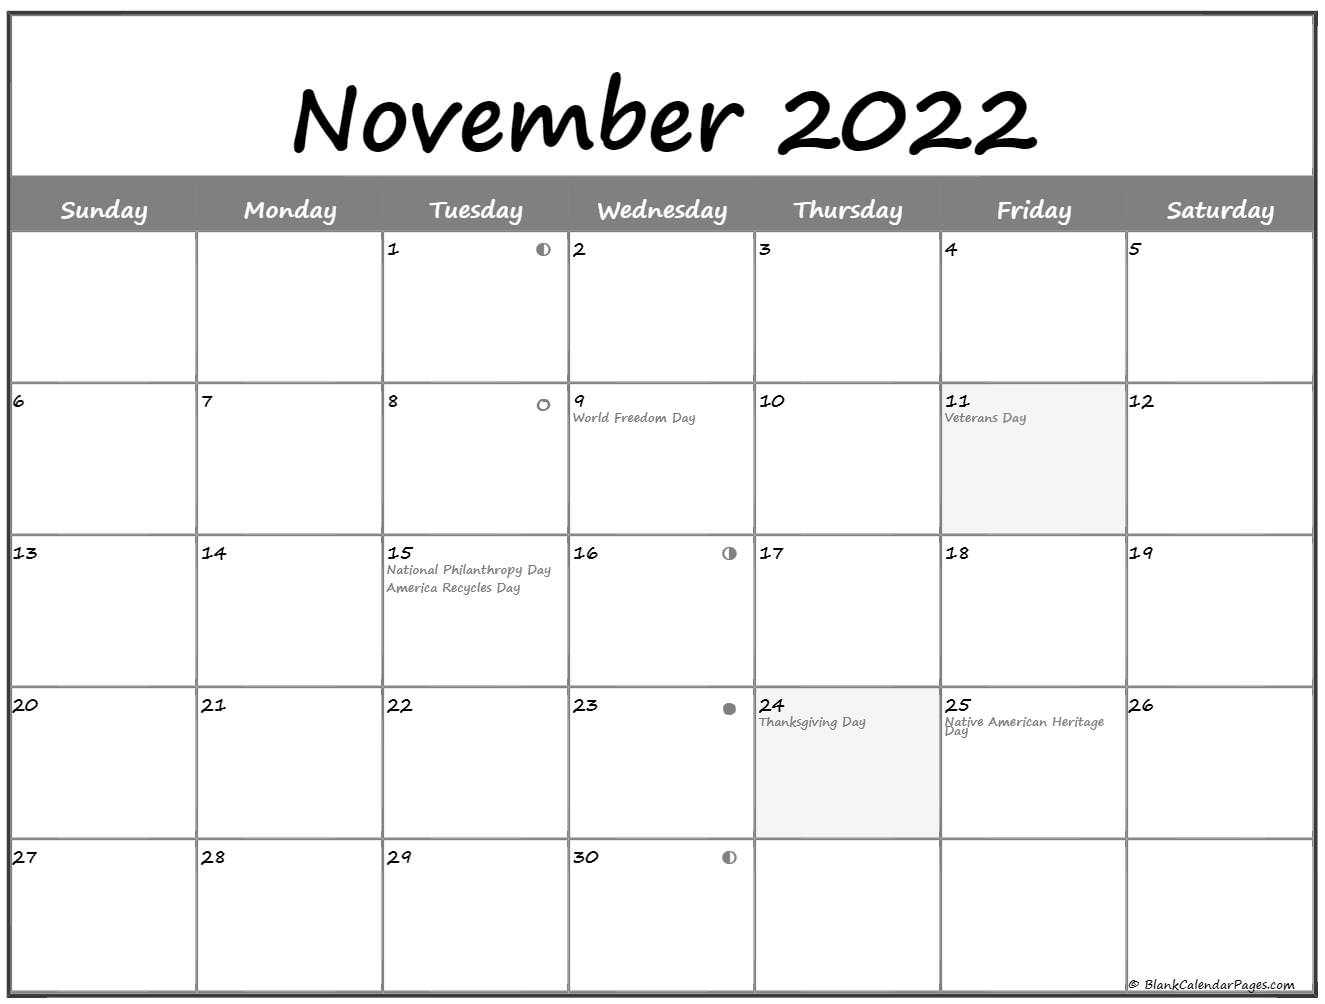 November 2022 Lunar Calendar | Moon Phase Calendar